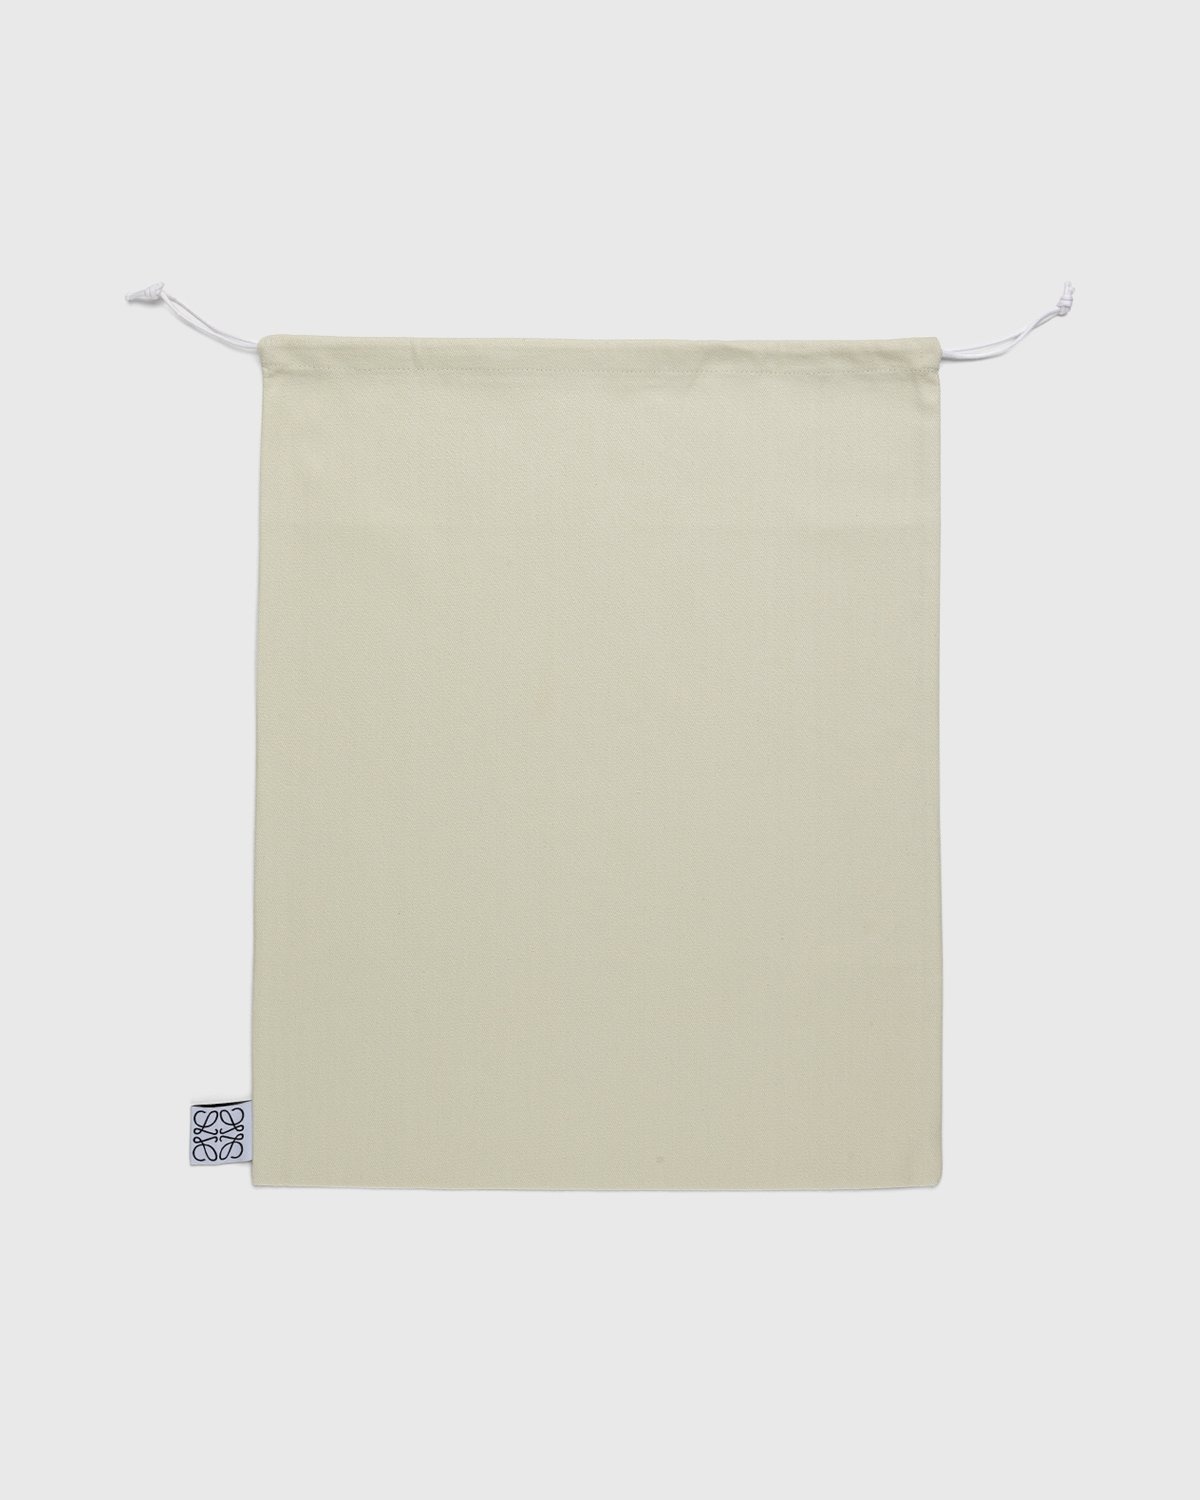 Loewe – Paula's Ibiza Mini Slit Bag Natural/Tan - Bags - Beige - Image 5